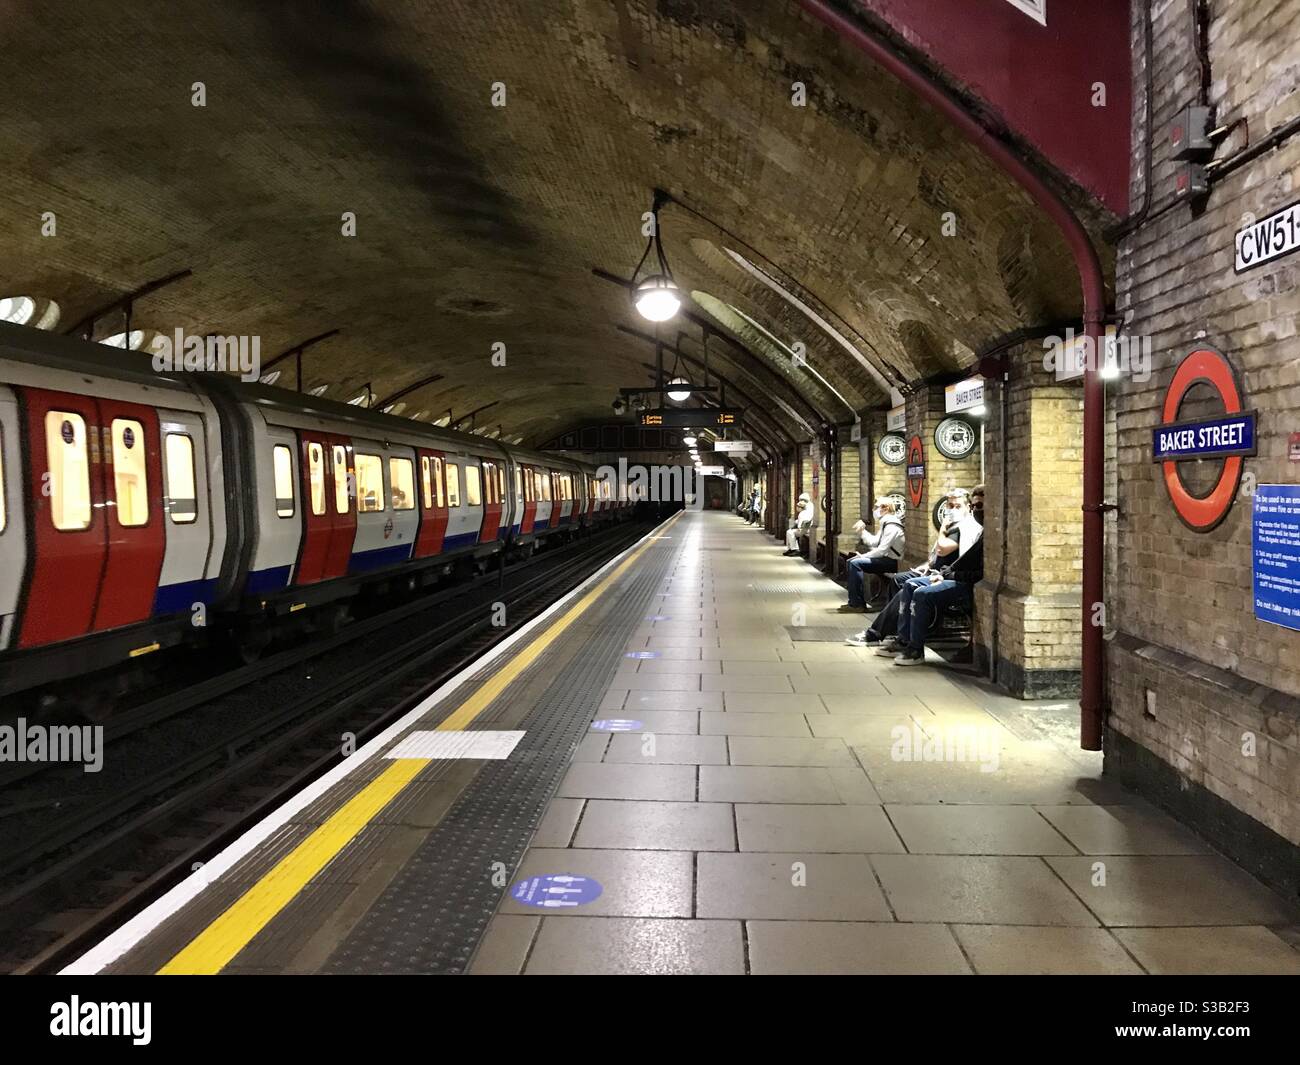 Baker Street tube station under COVID lockdown, London, UK Stock Photo